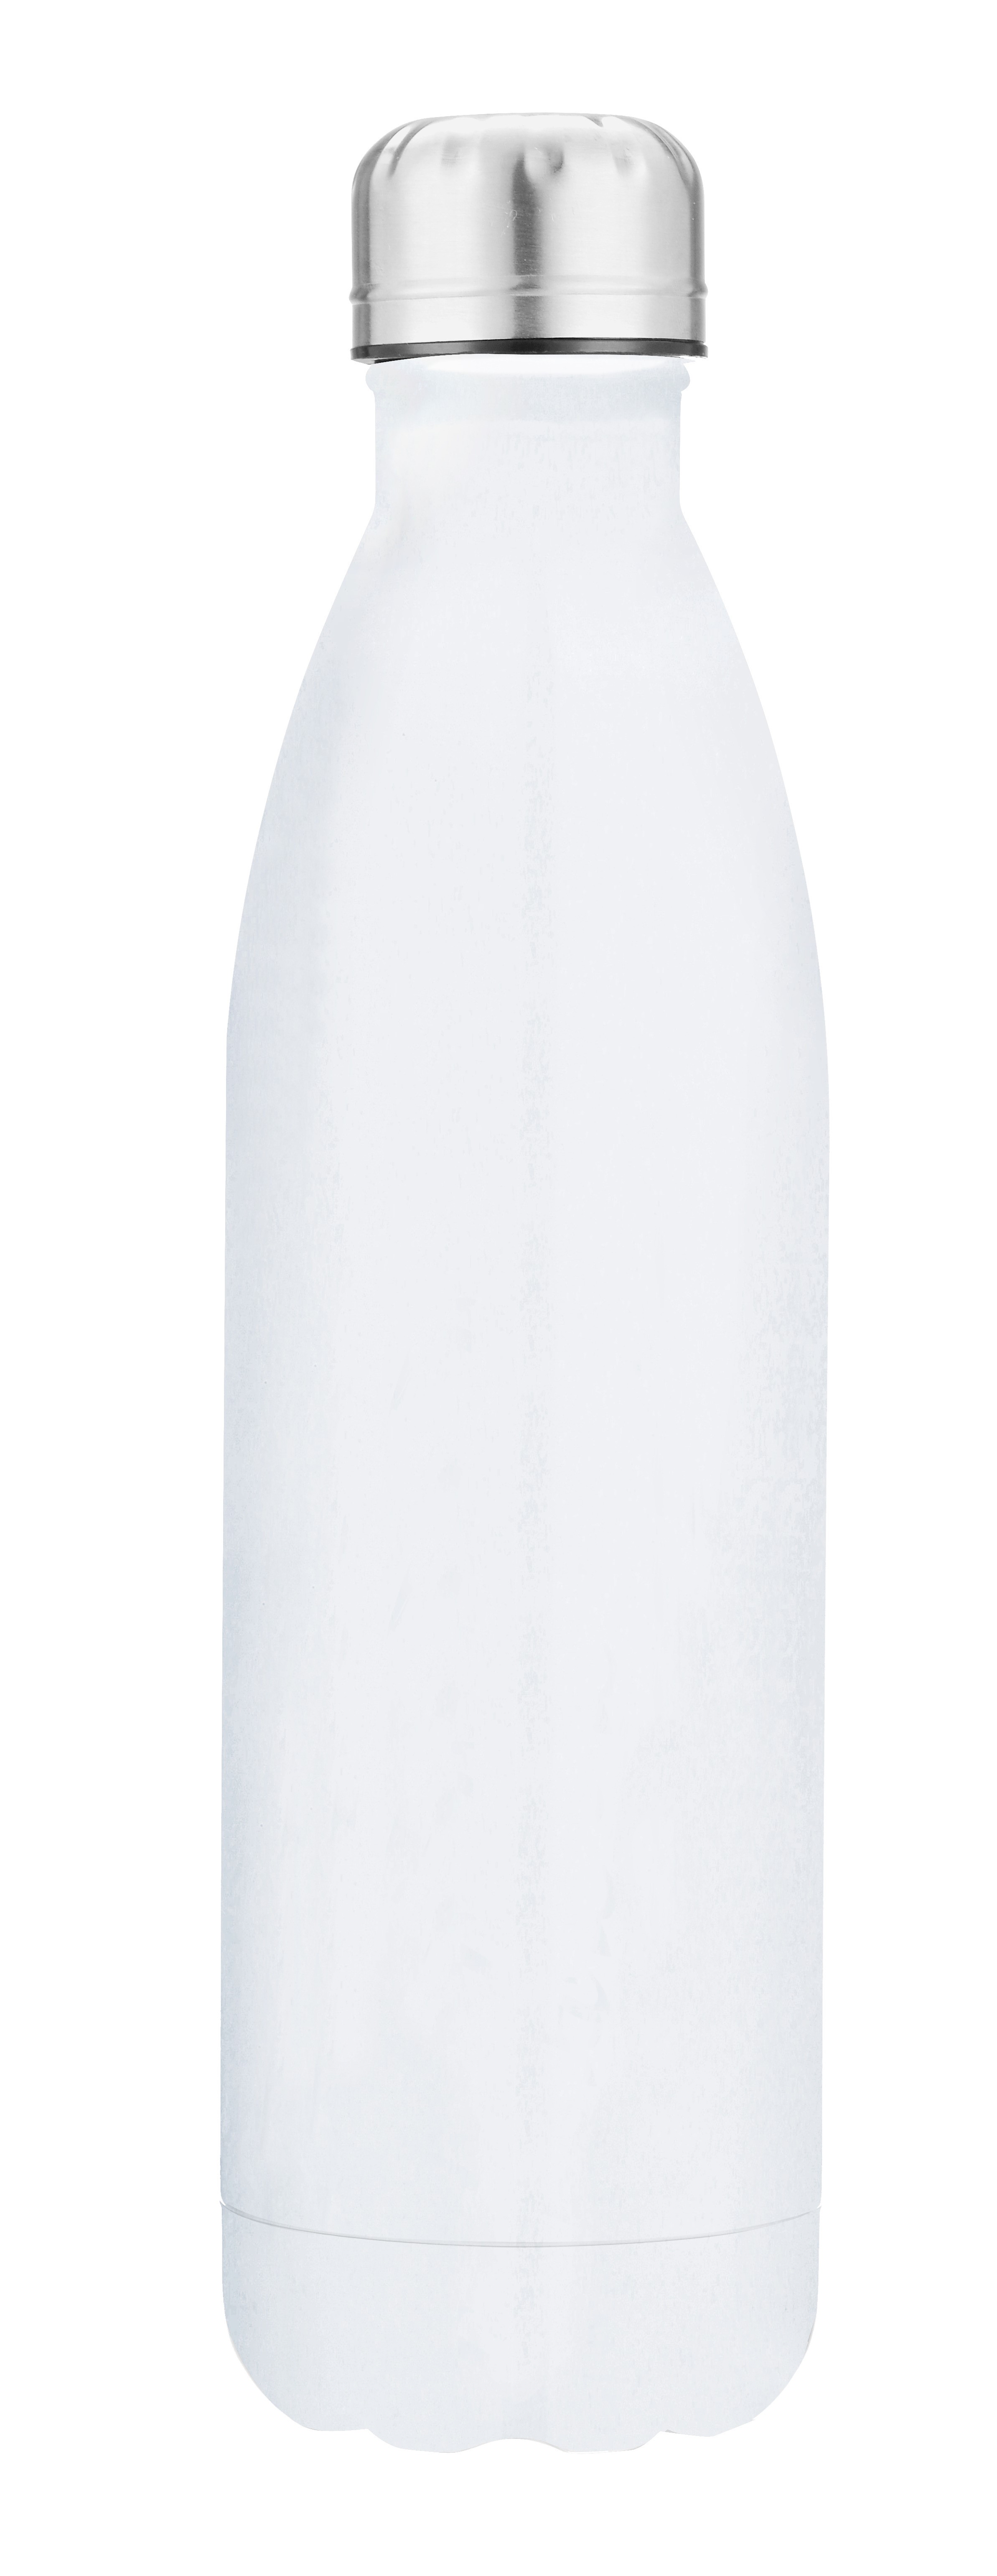 TRIO vacuum bottle 500 ml white